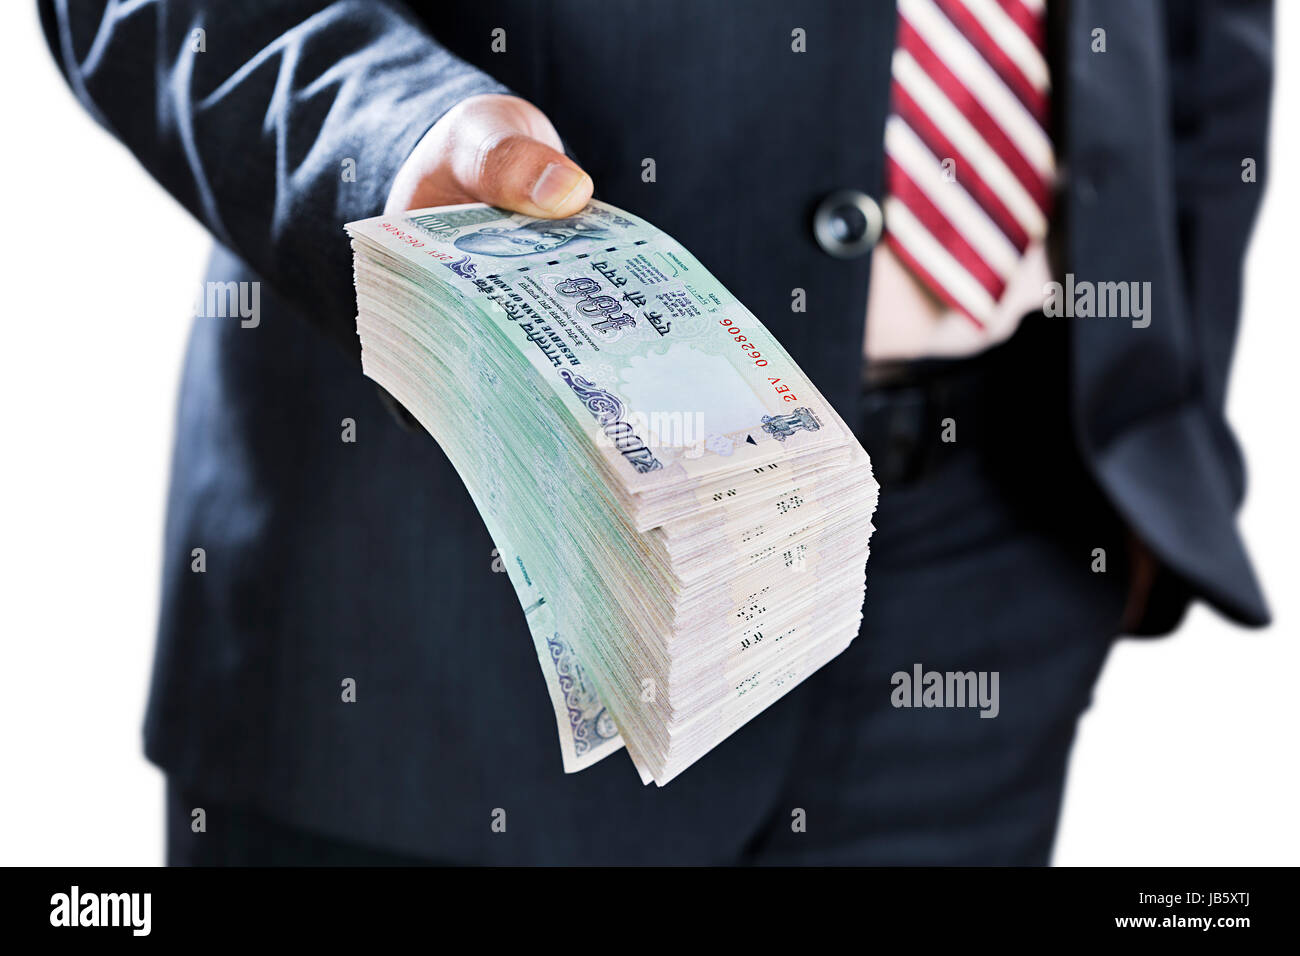 1 empresario corrupción dando dinero moneda india observa bundle dando la delincuencia Foto de stock